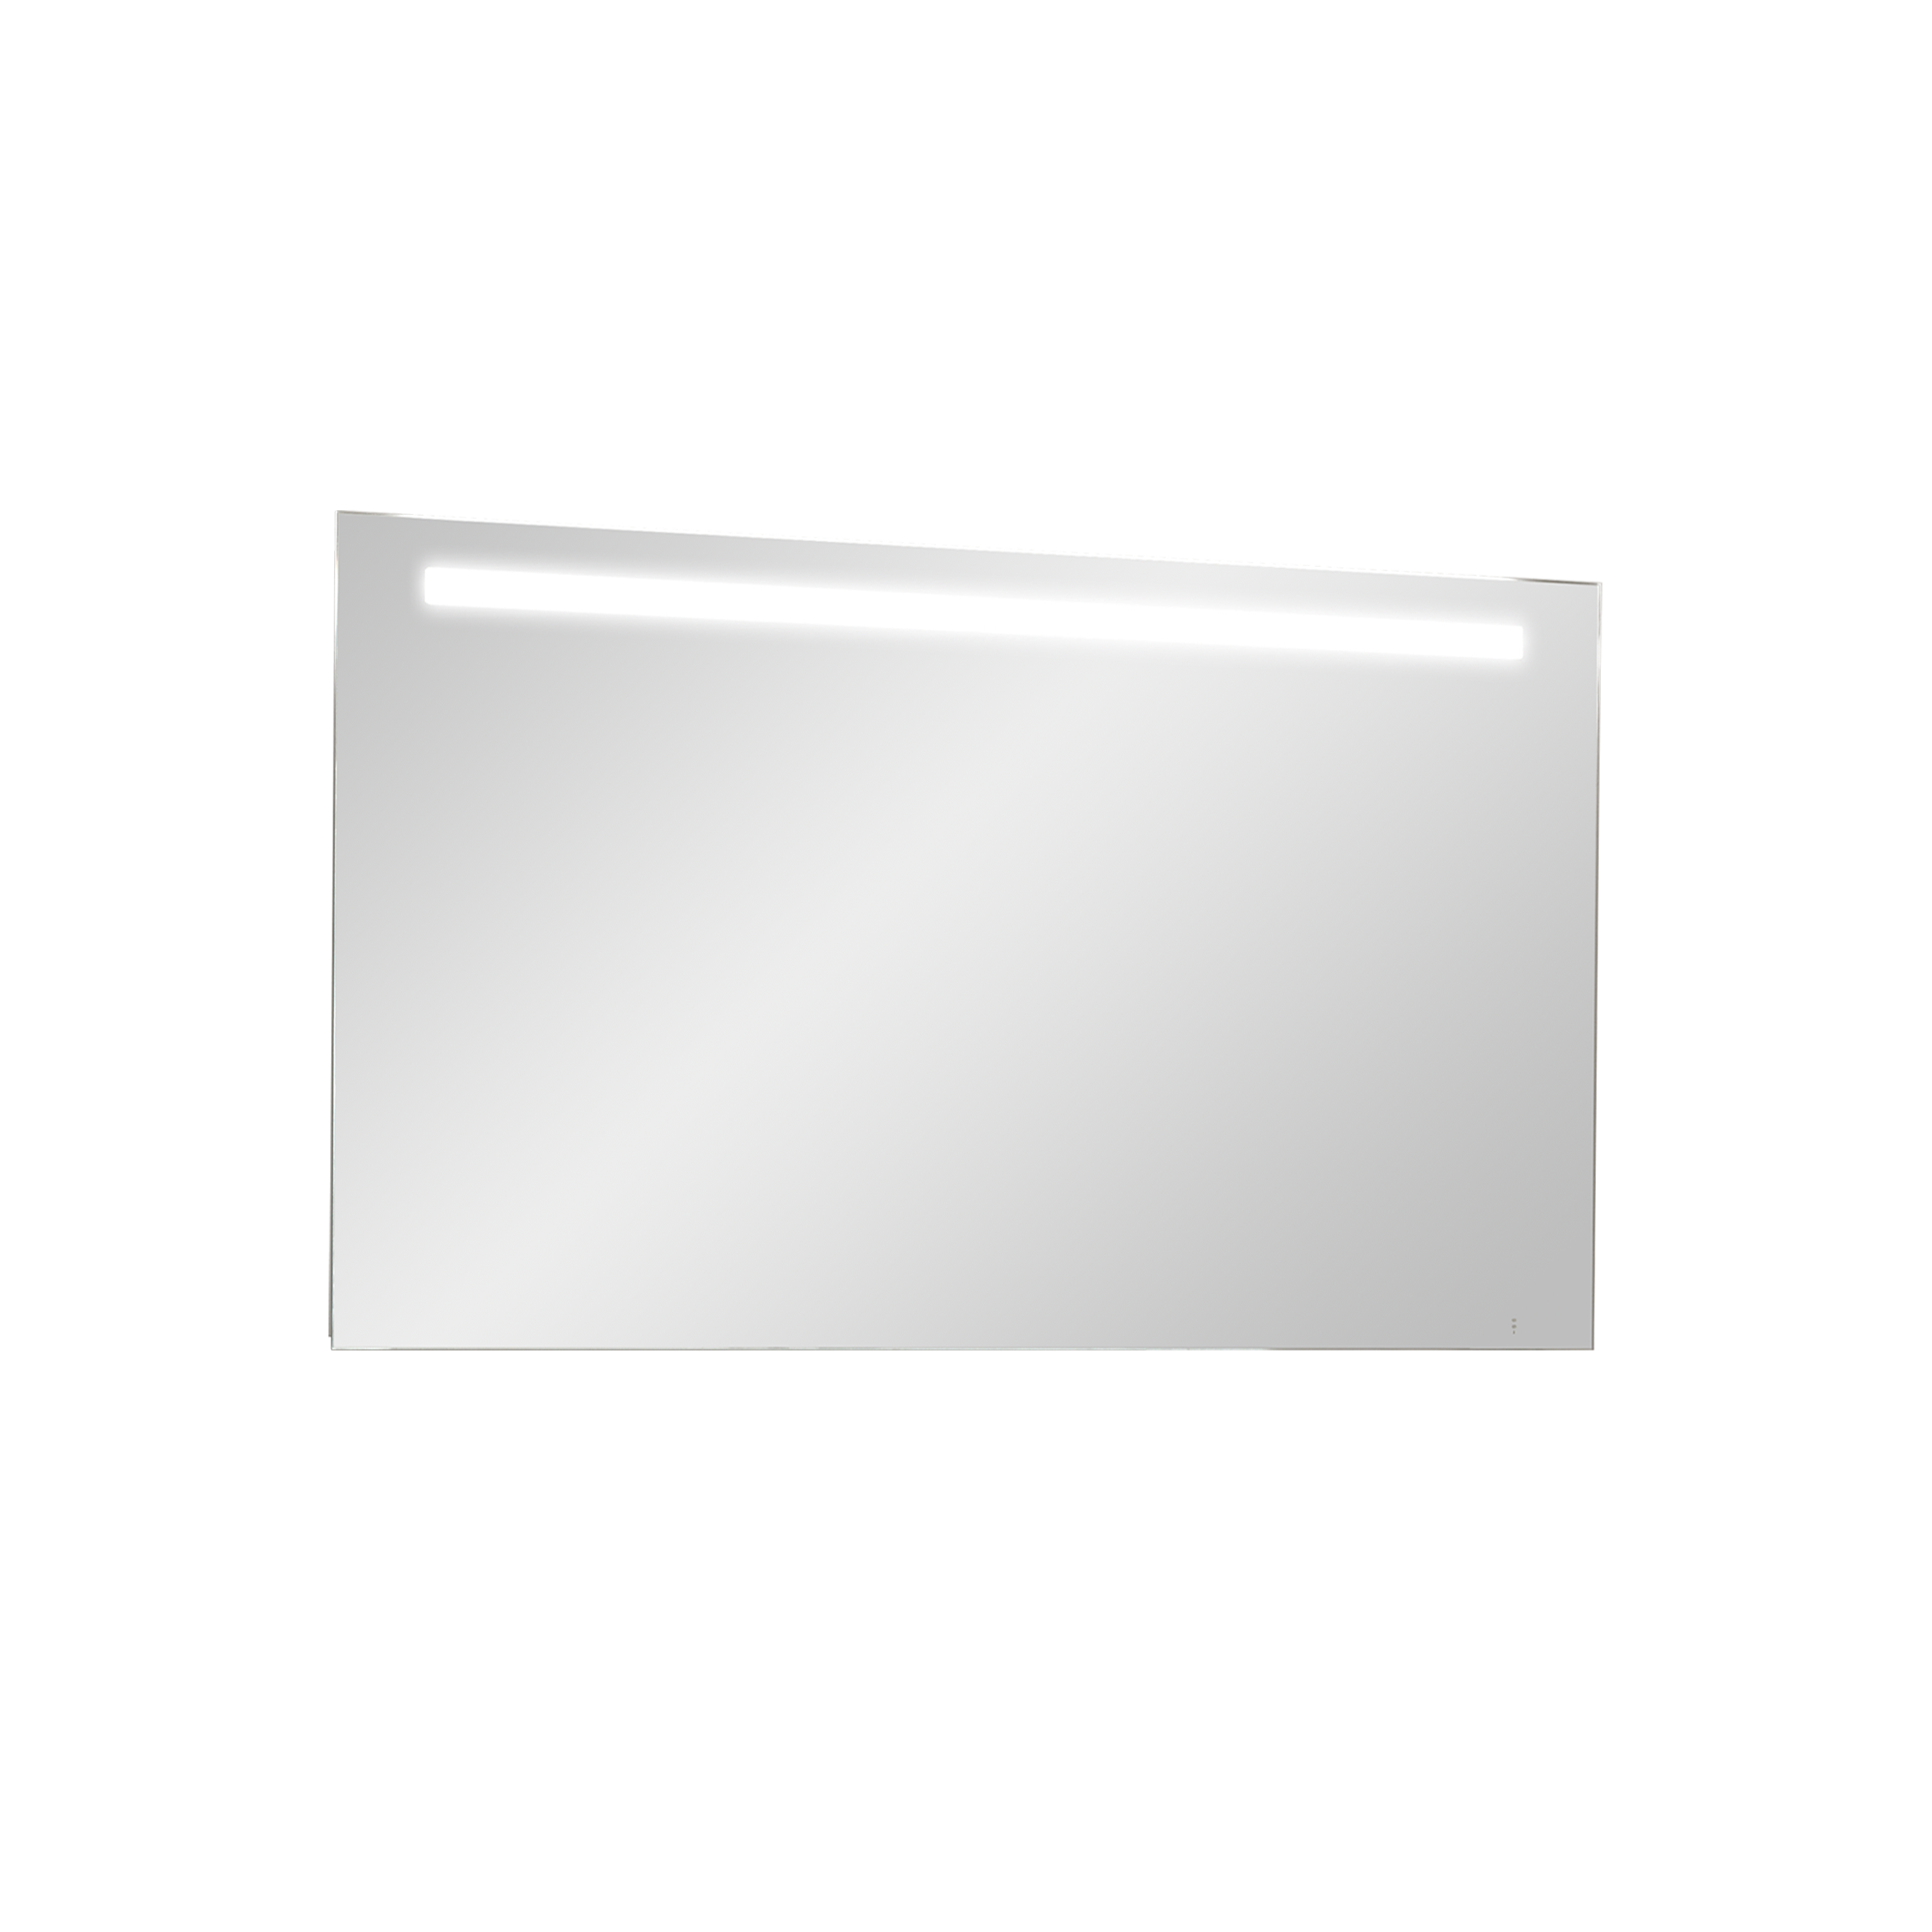 Storke Lucio rechthoekig badkamerspiegel 120 x 65 cm met spiegelverlichting en -verwarming